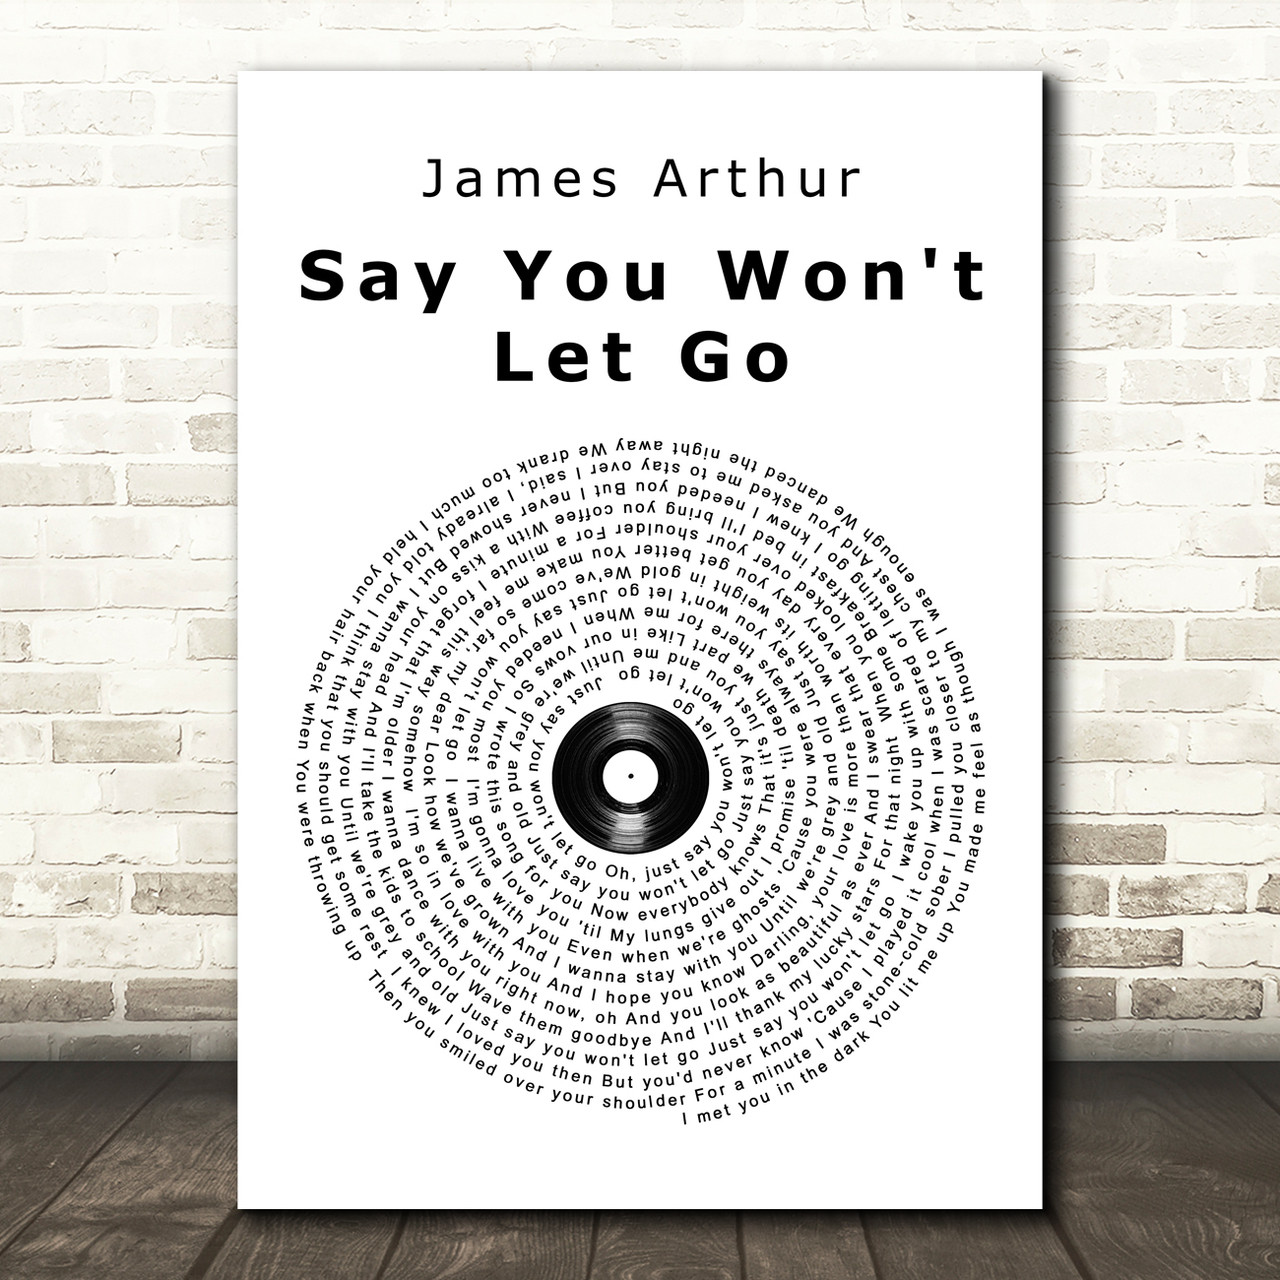 James Arthur, Say you won't let go